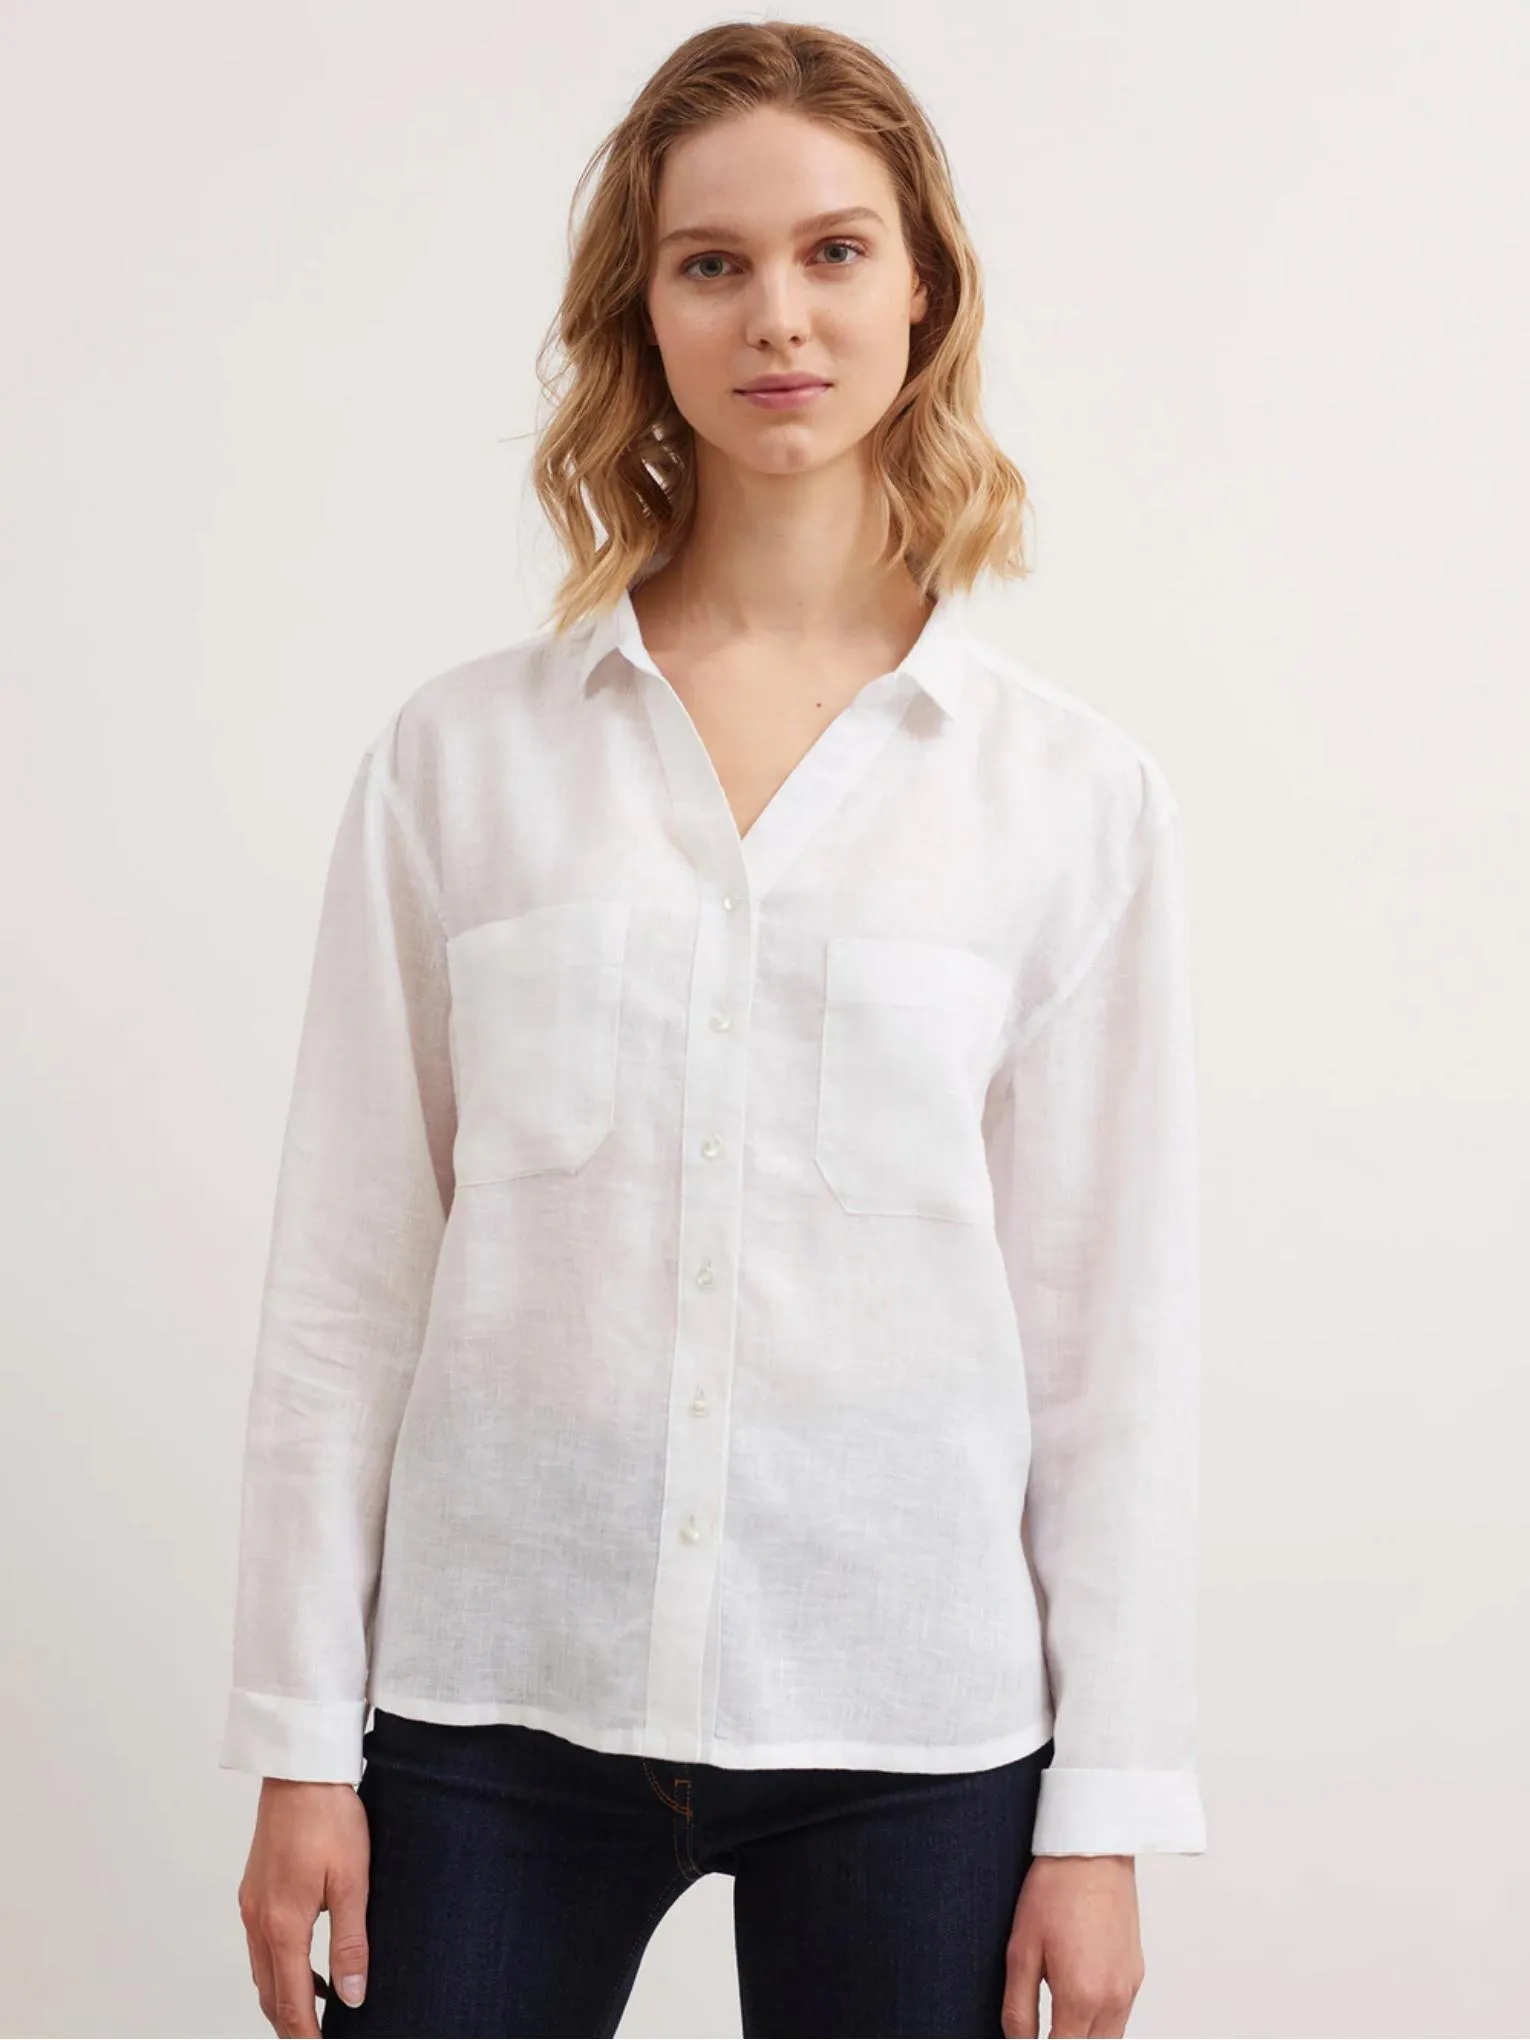 Catalogue Chemises & blouses, page 00005